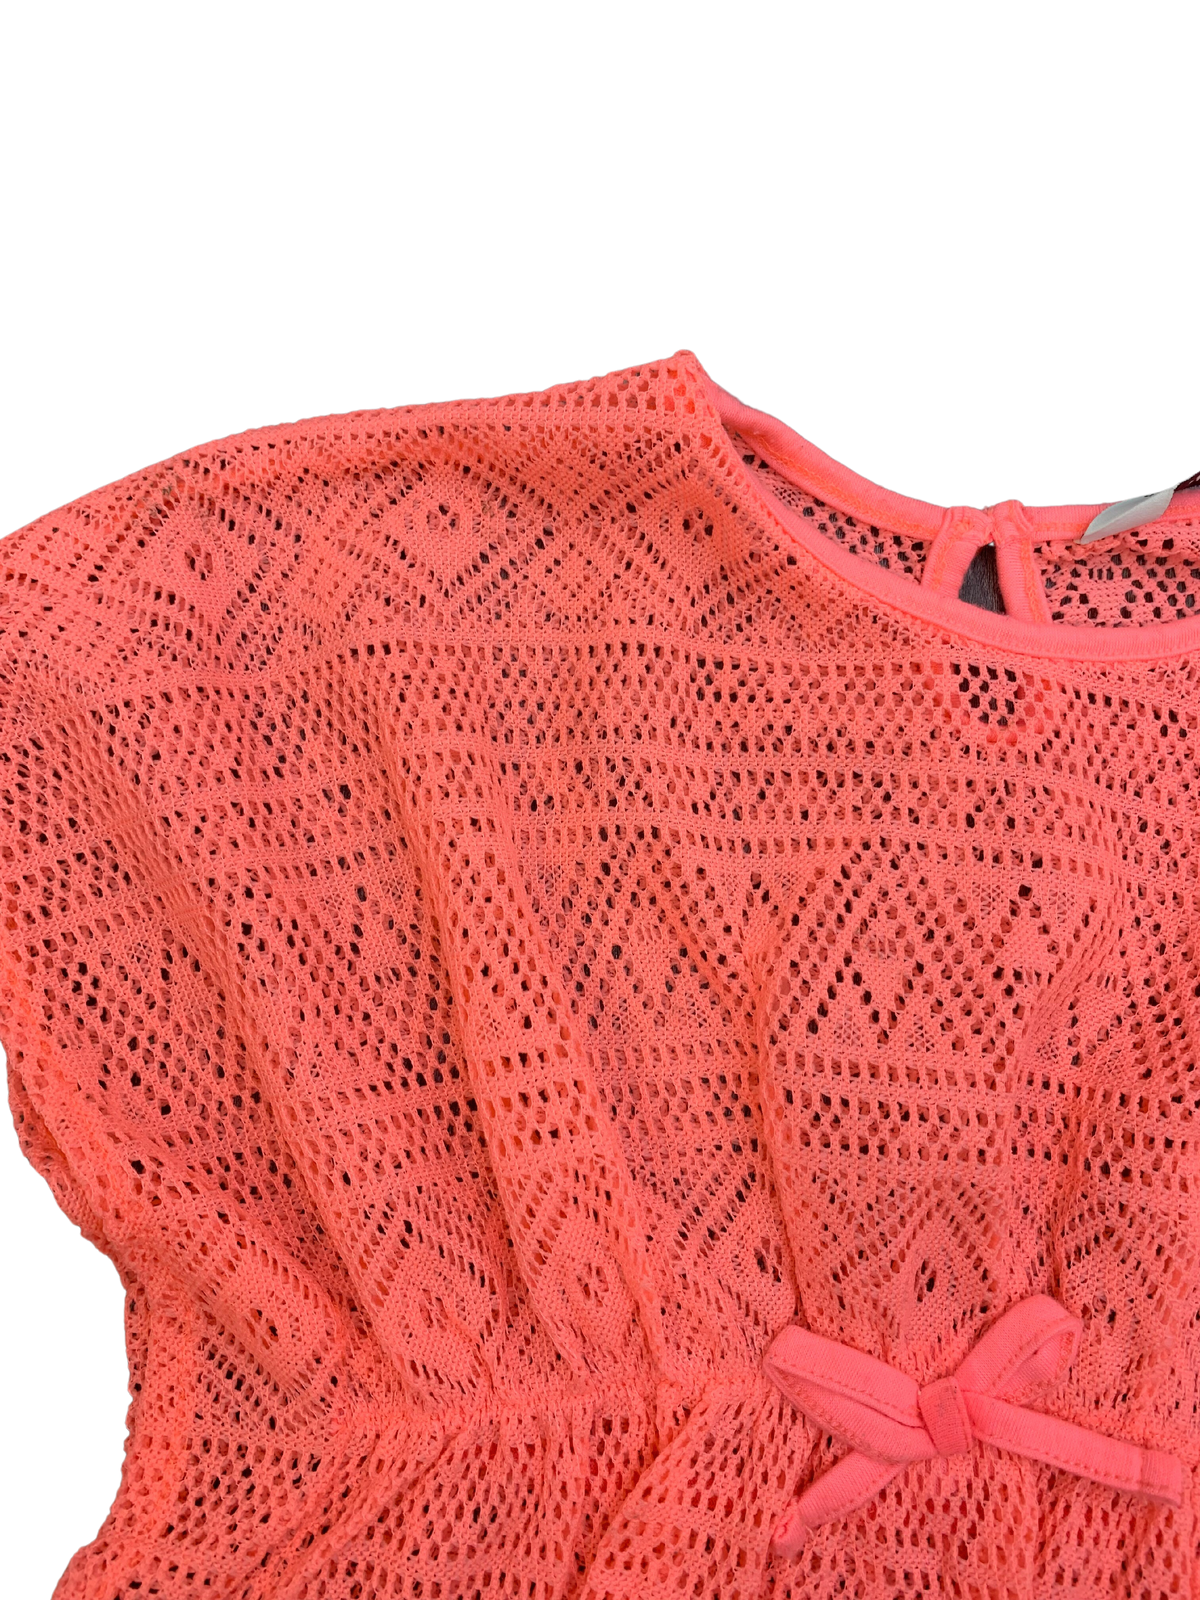 Primark Crochet Beach Cover Up Girls 5-6 Years